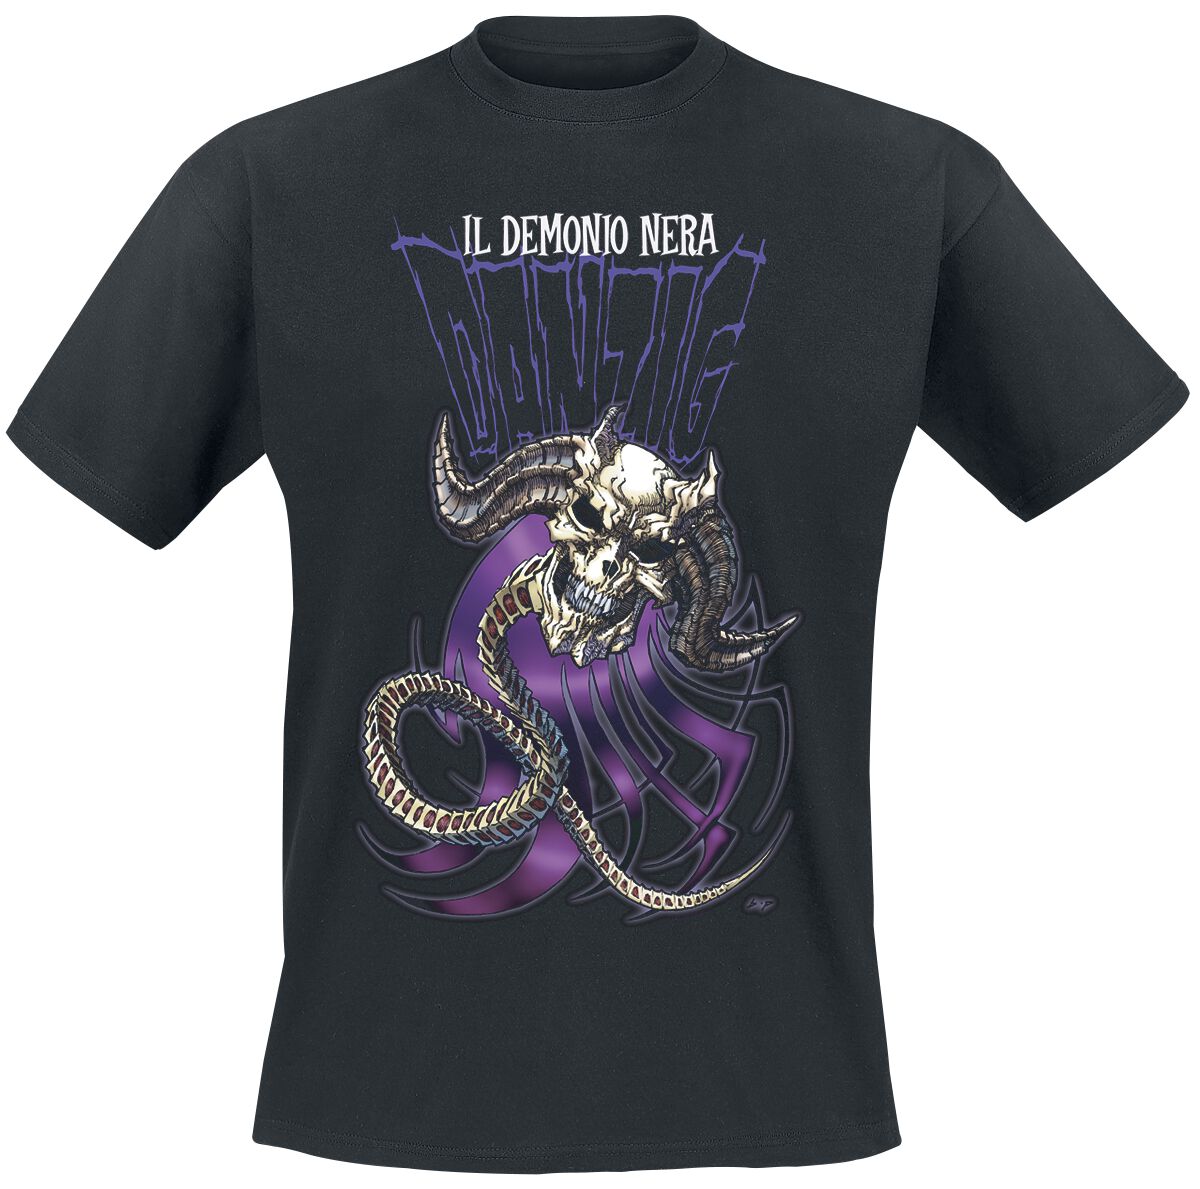 Danzig T-Shirt - Il Demonio Nera - S bis XL - für Männer - Größe XL - schwarz  - Lizenziertes Merchandise!